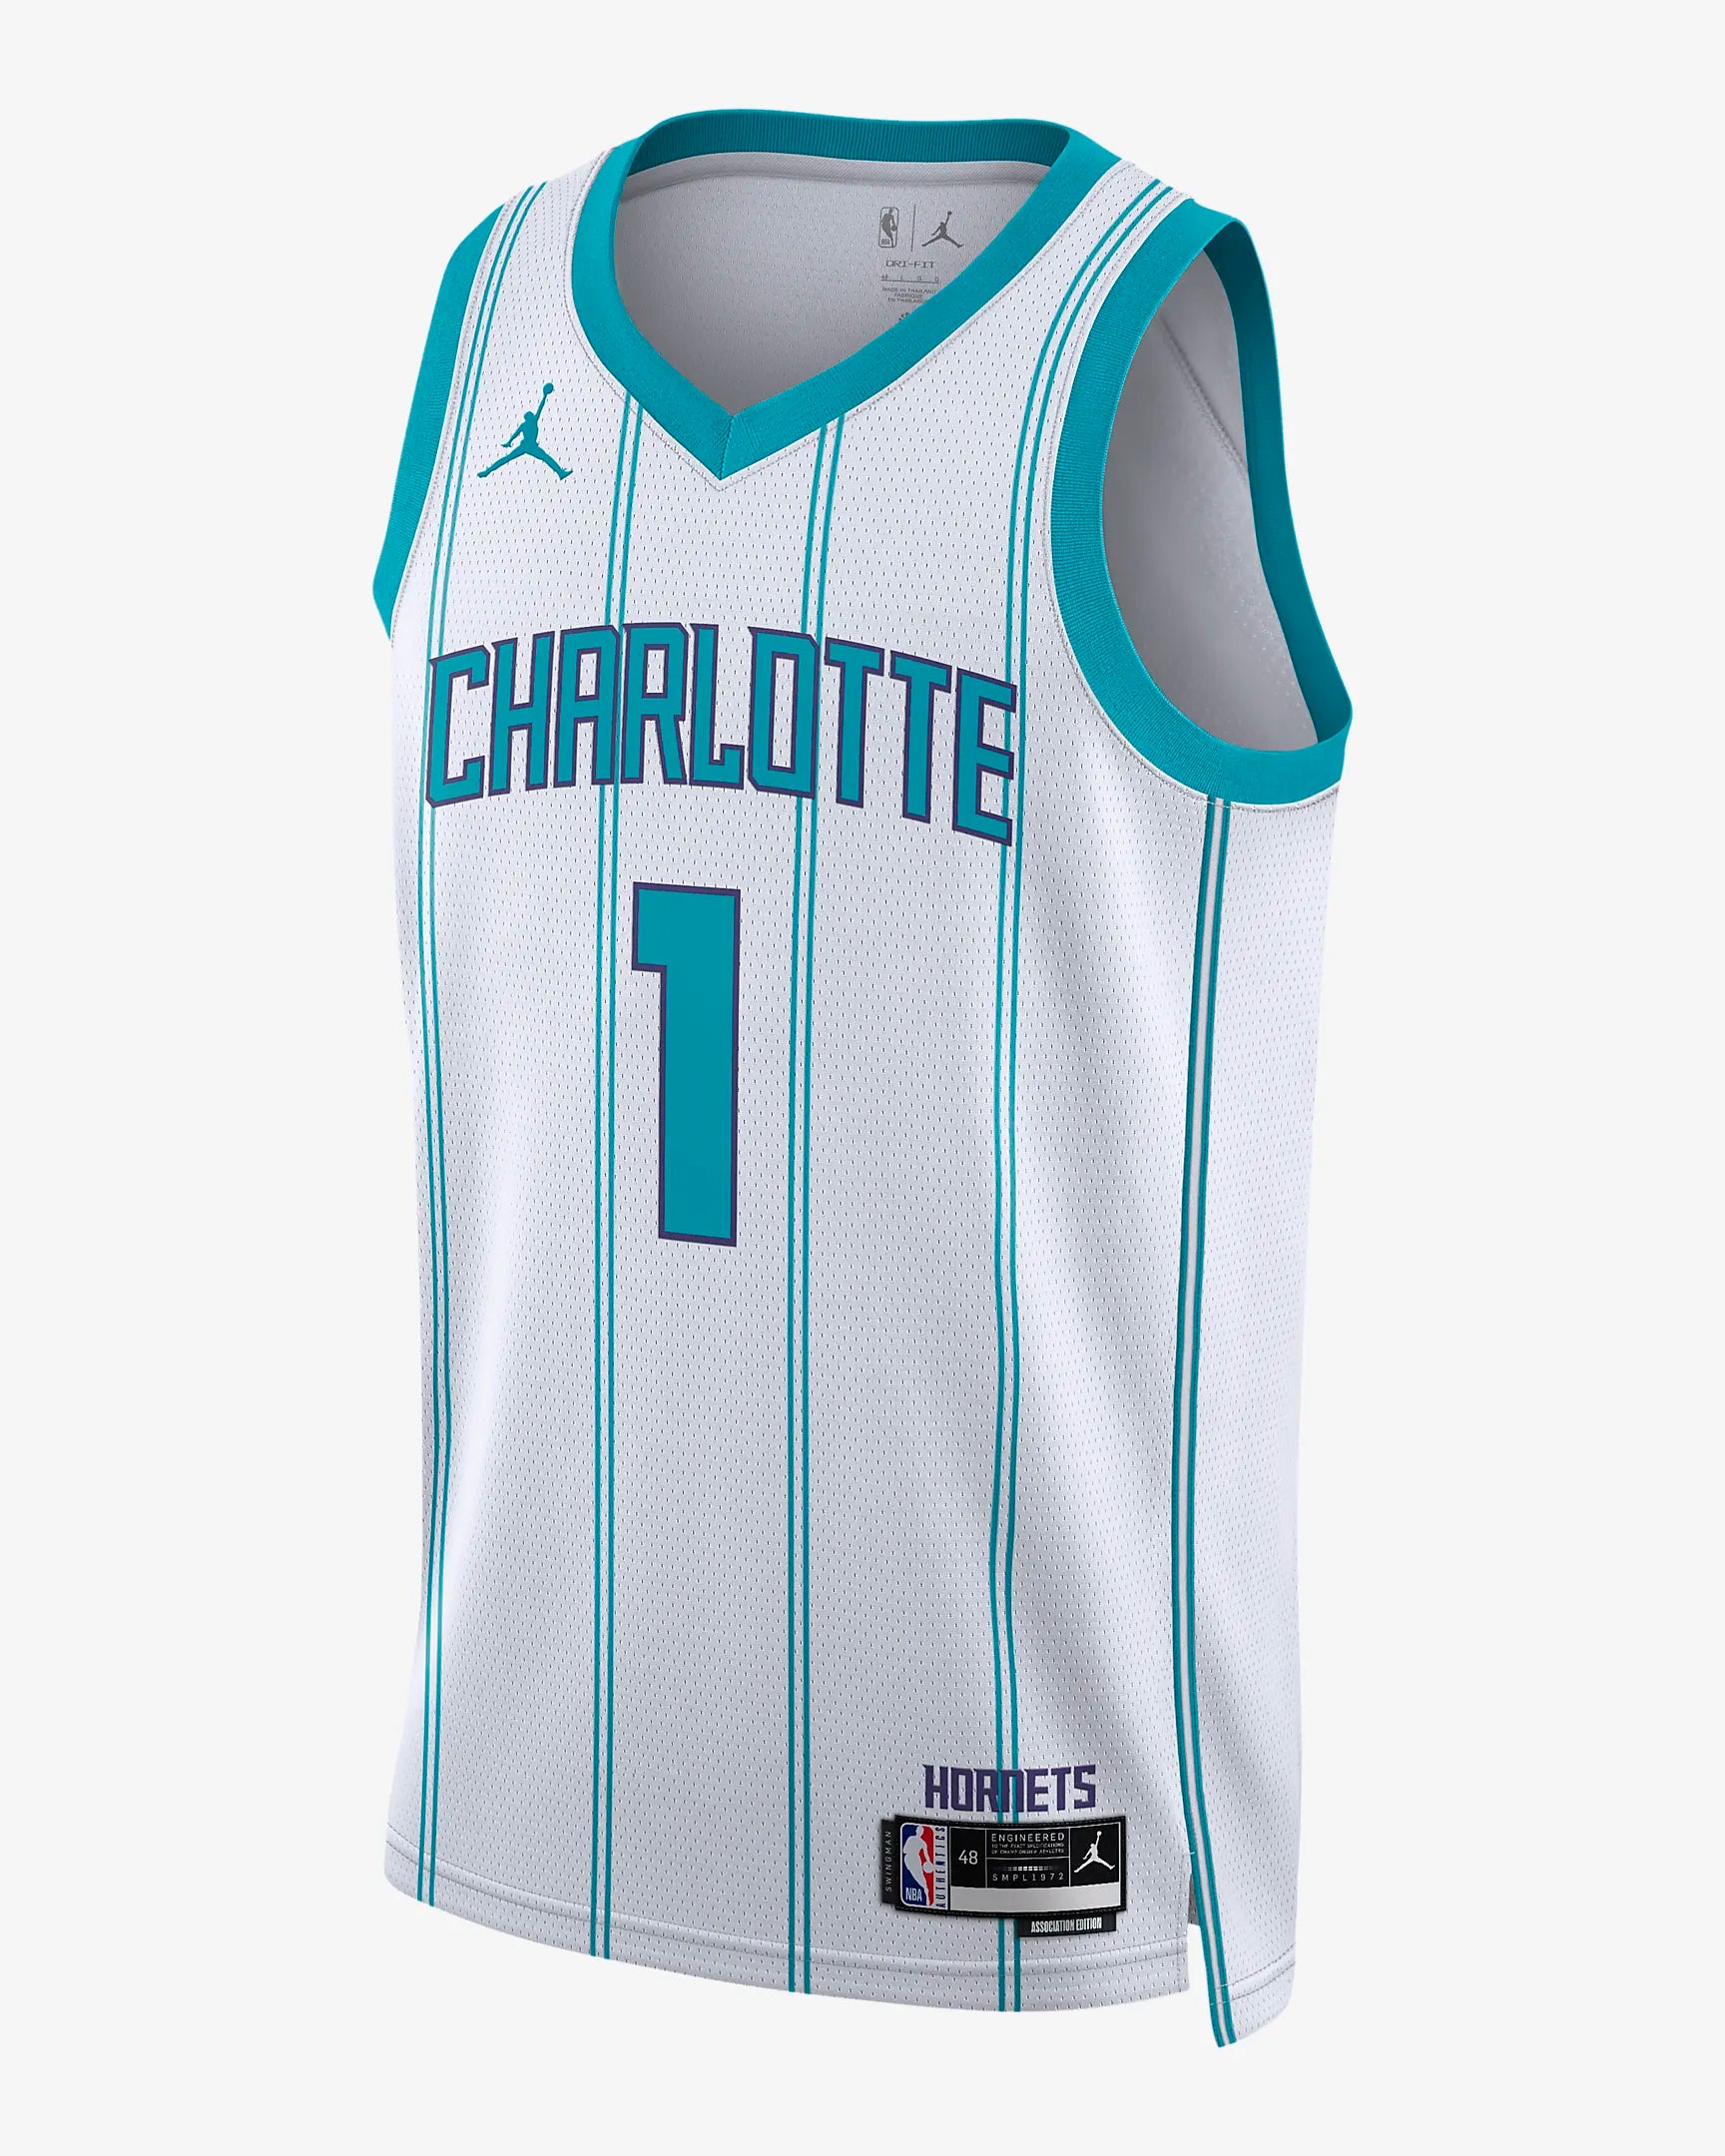 LaMelo Ball Charlotte Hornets 2023/24 Nike Men's Dri-Fit NBA Swingman Jersey in Blue, Size: Medium | DX8610-415